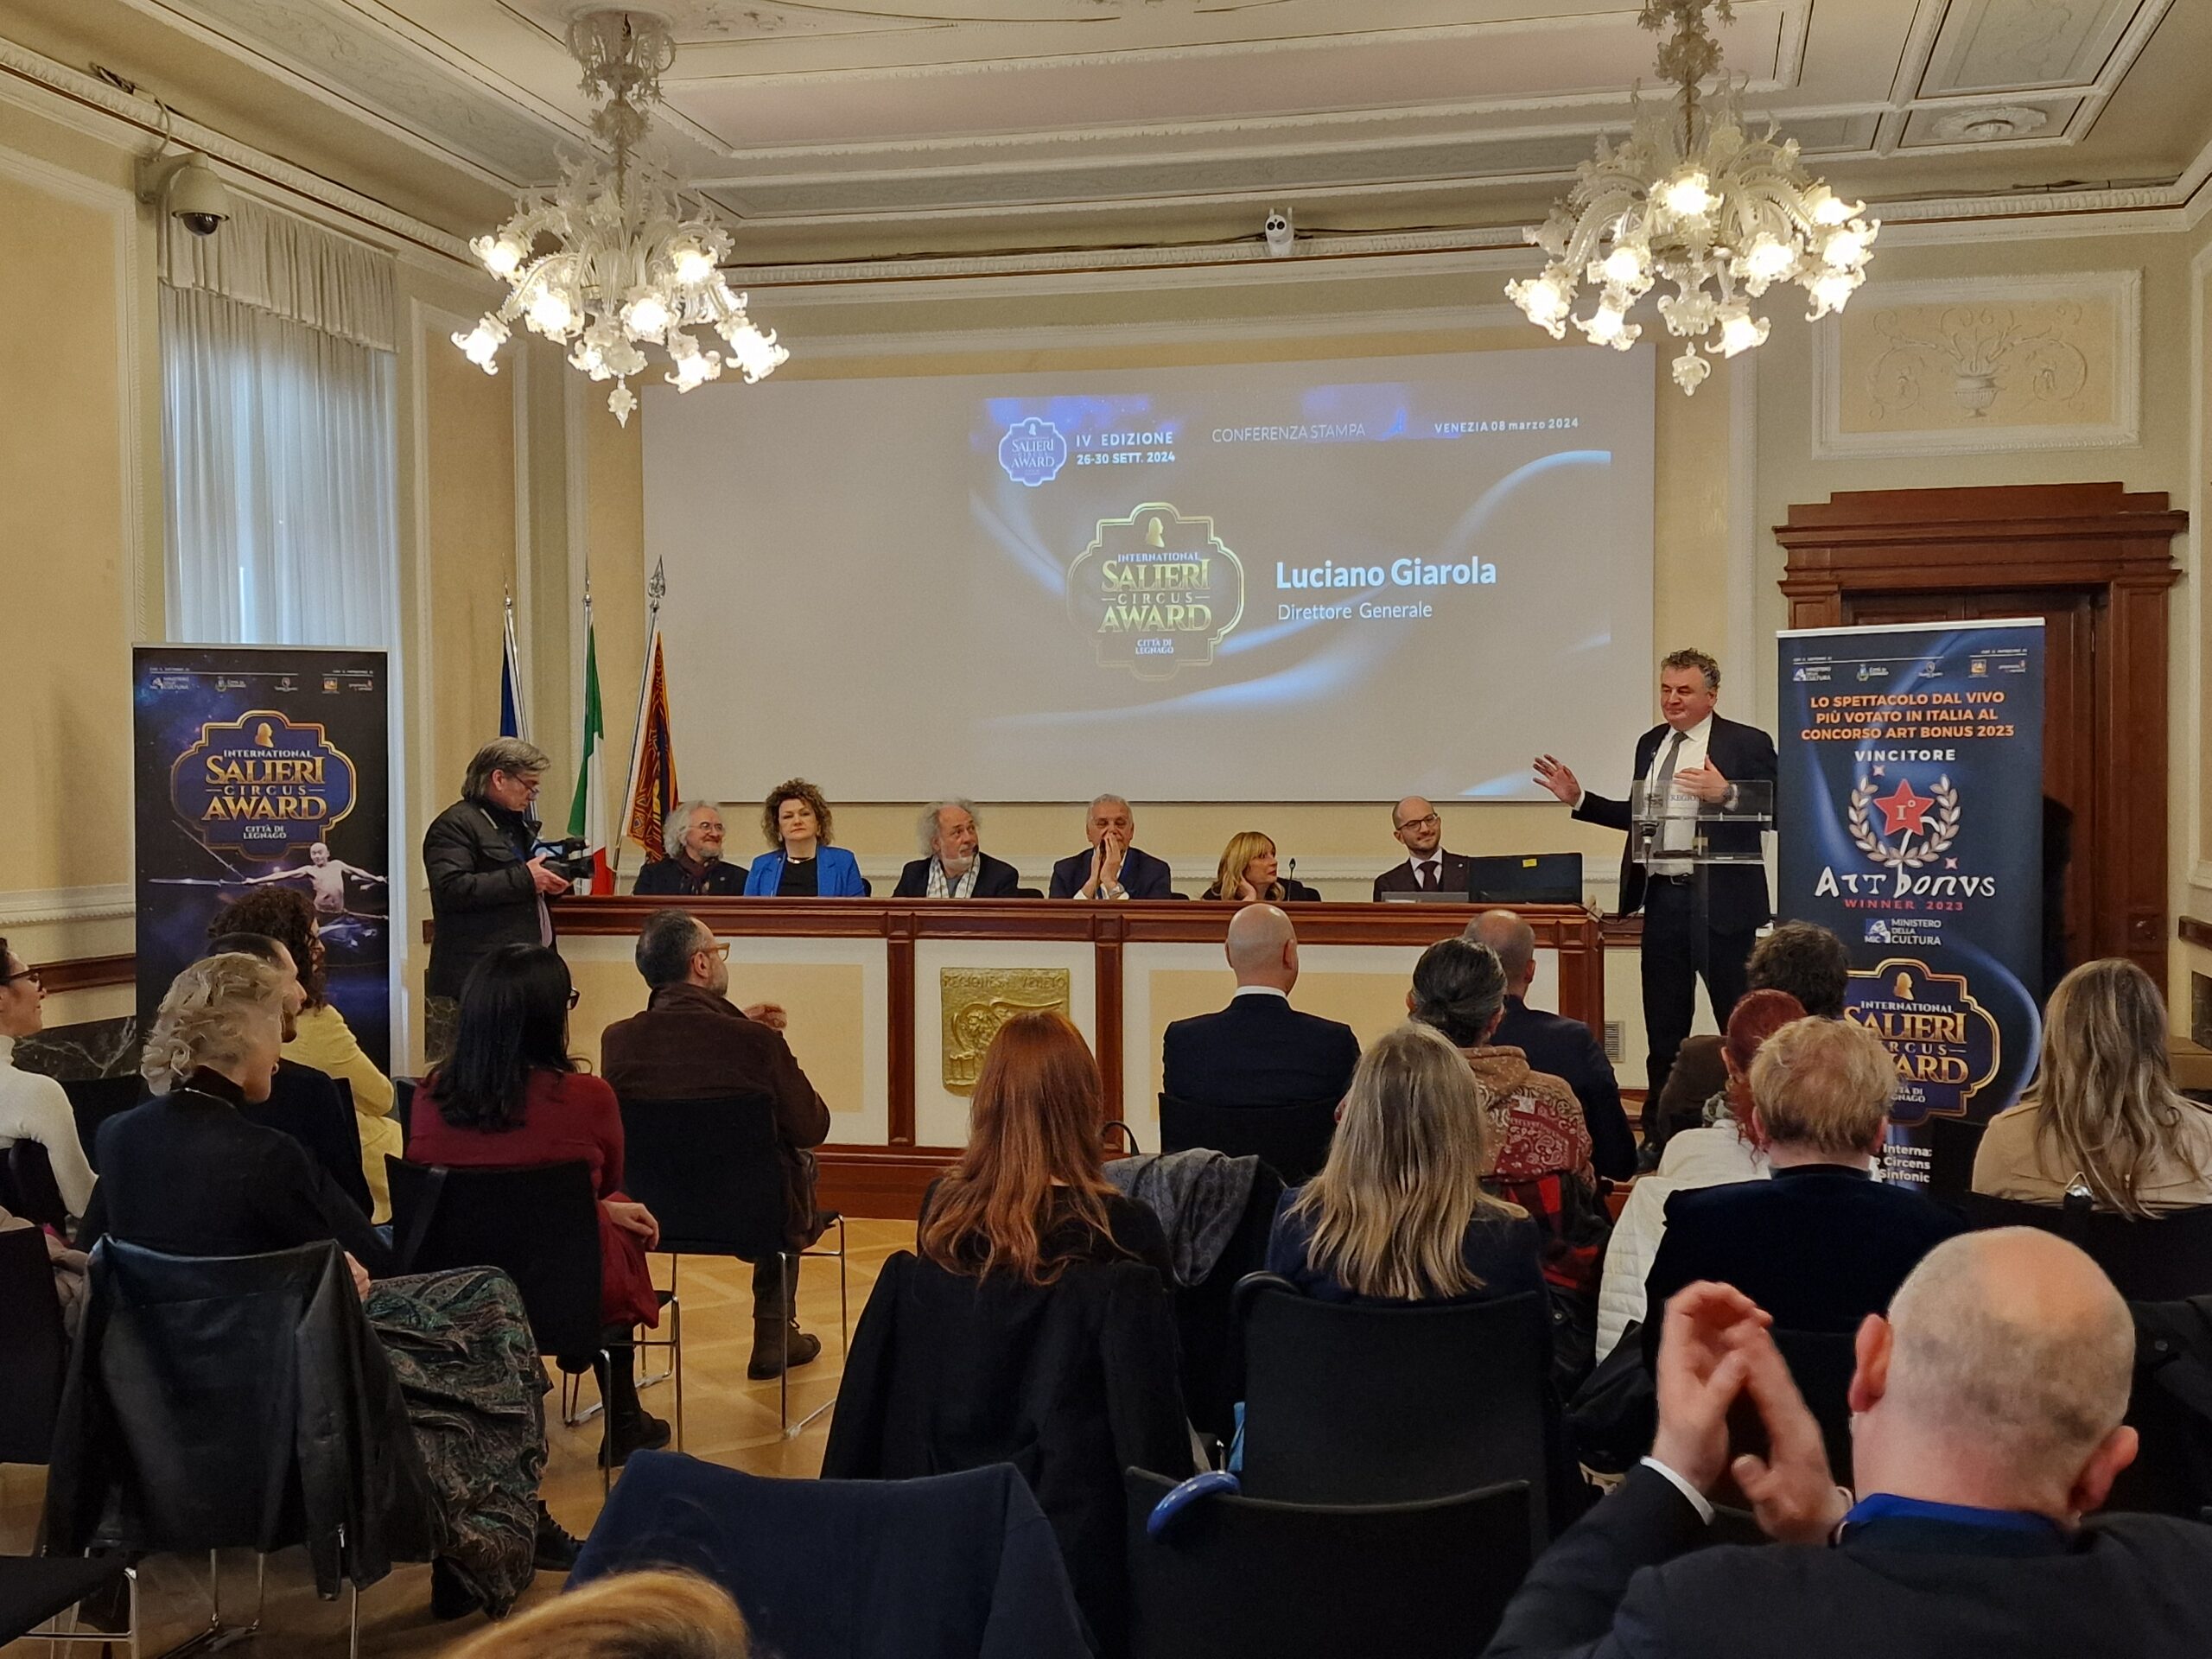 Presentata a Venezia la 4ᵃ edizione del Salieri Circus Award